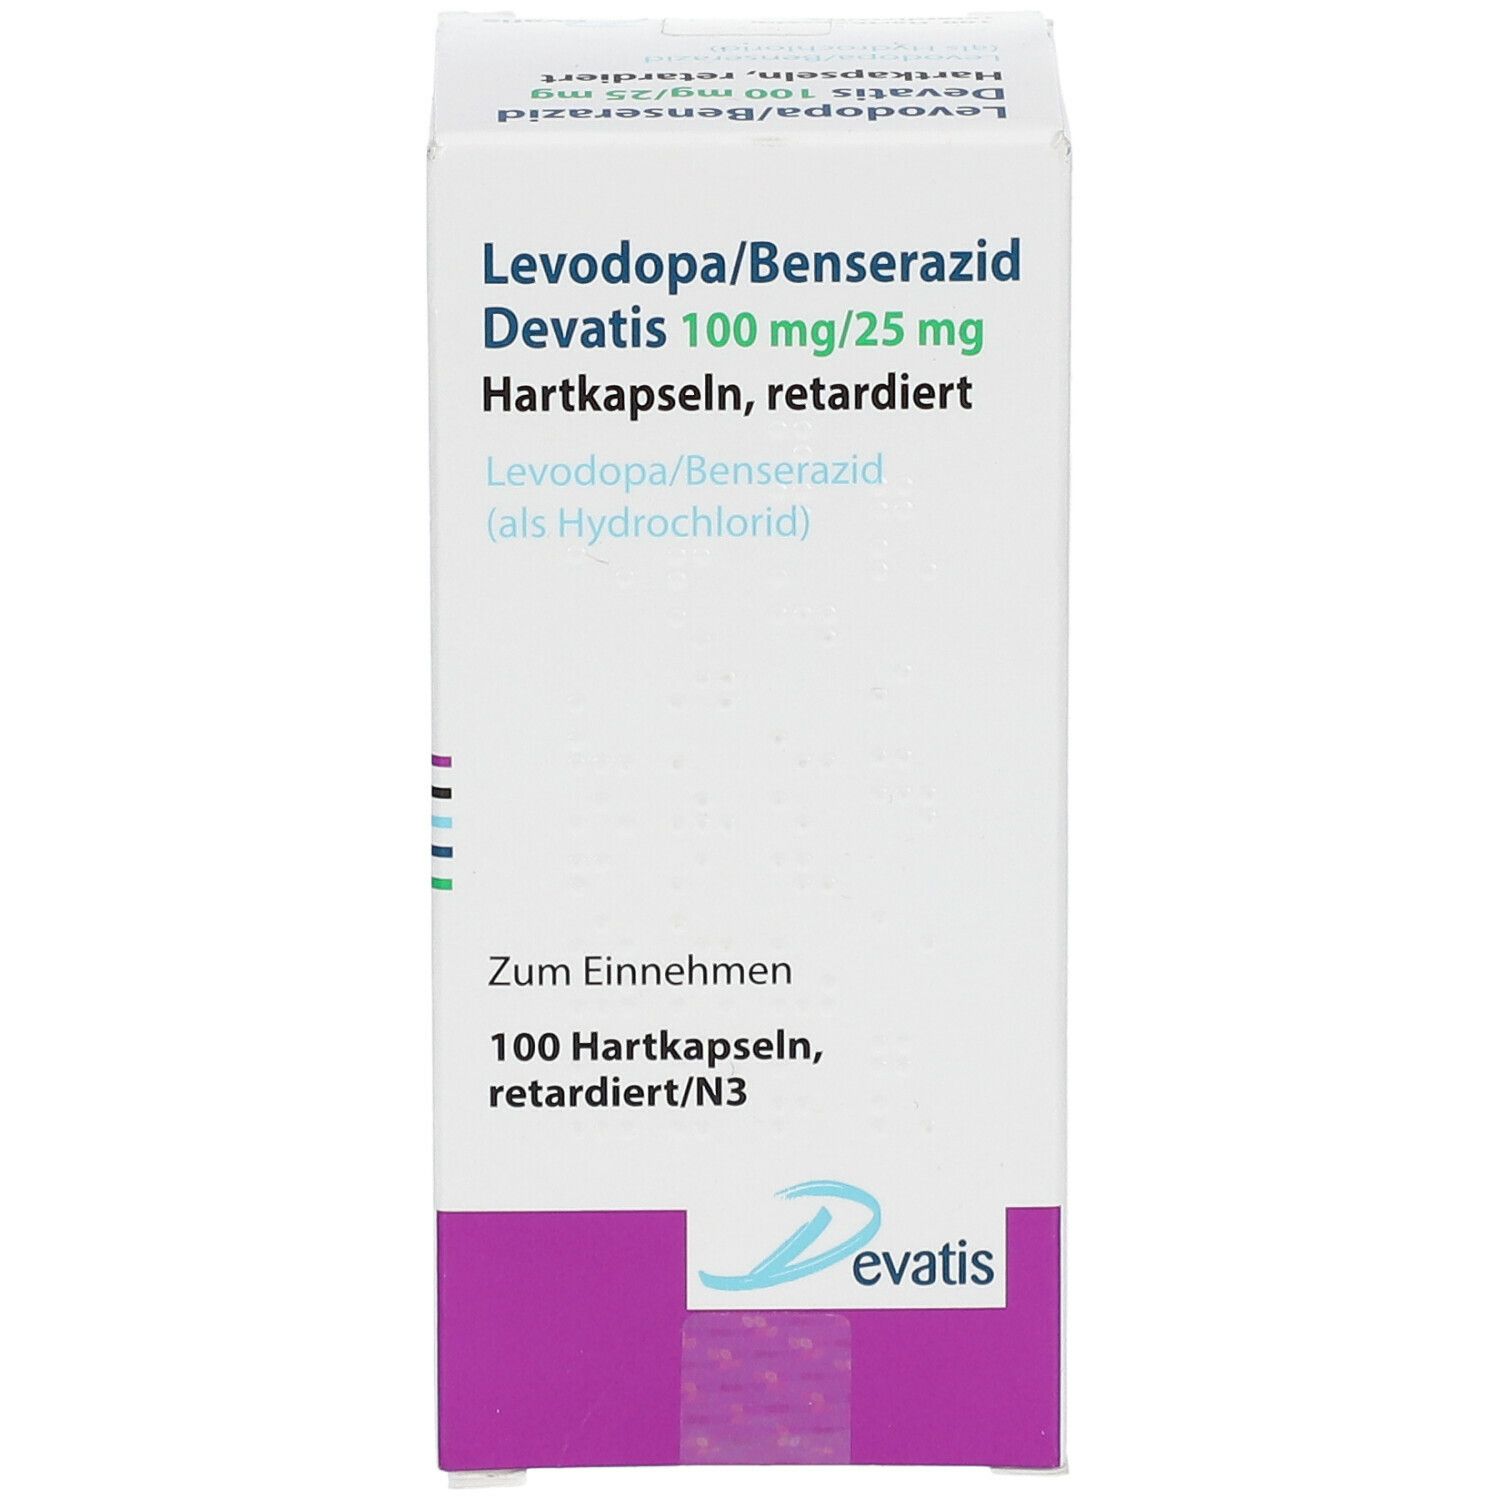 Levodopa/Benserazid Devatis 100 mg/25 mg